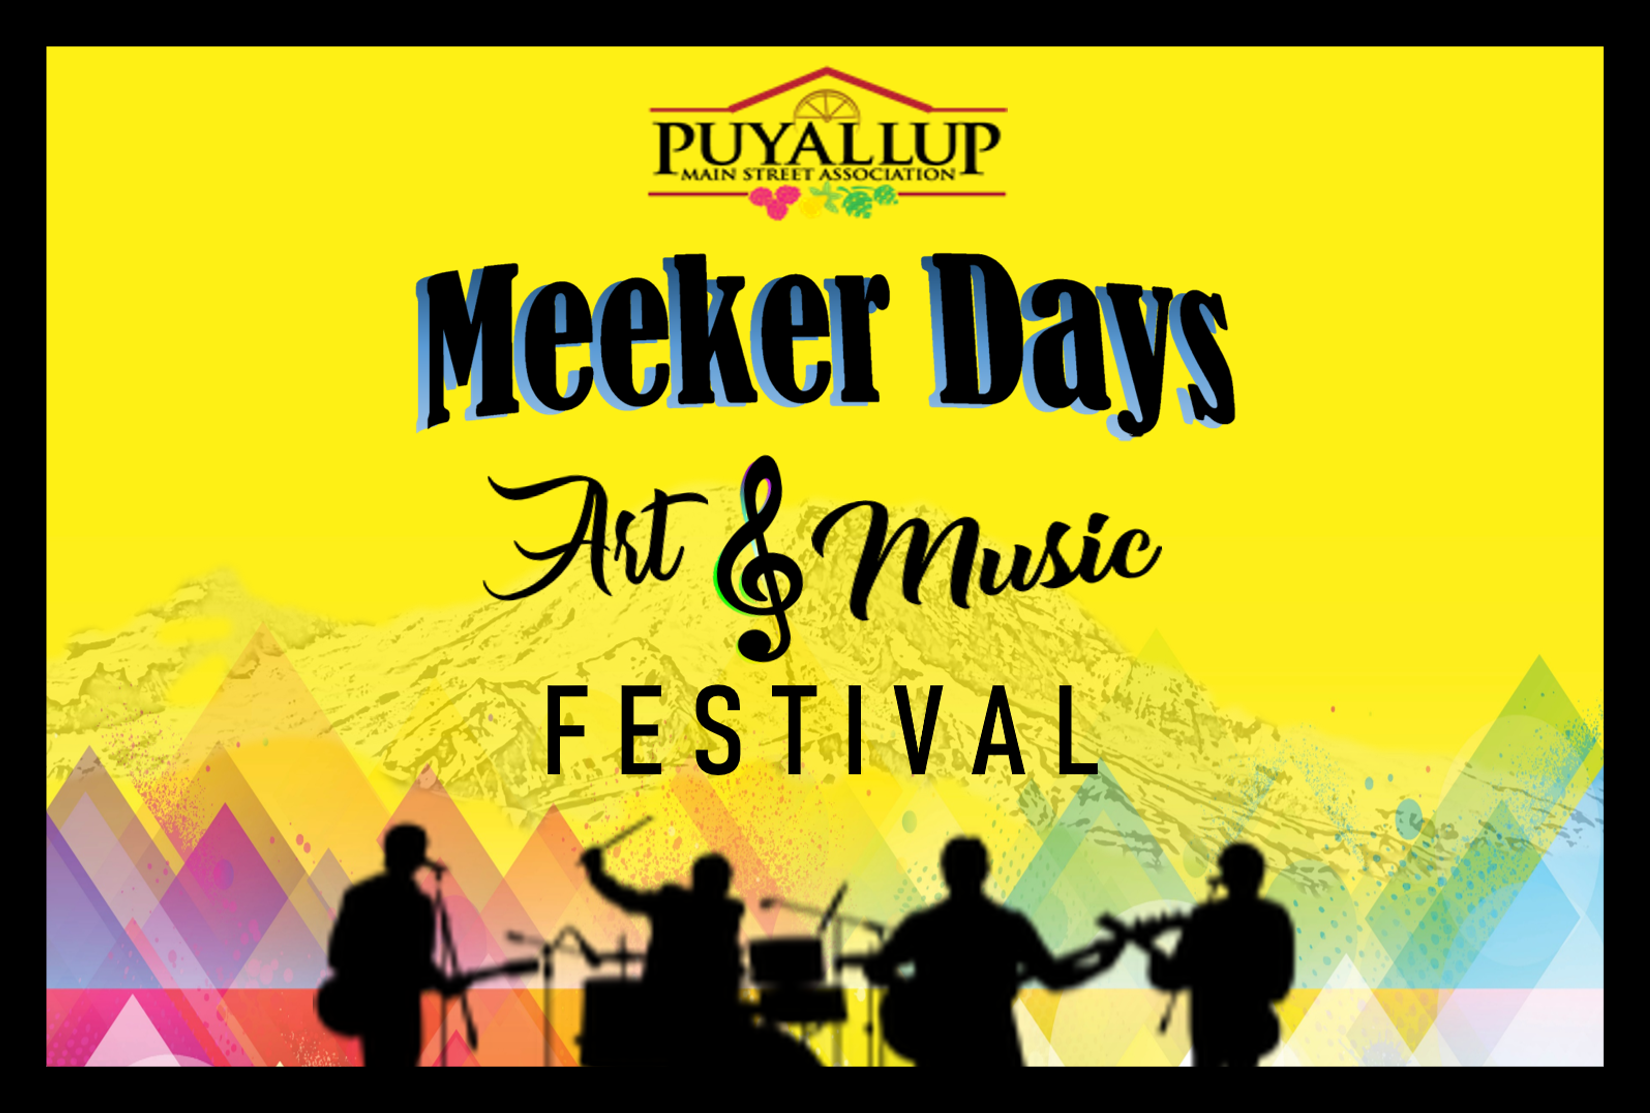 Meeker Days Puyallup Main Street Association